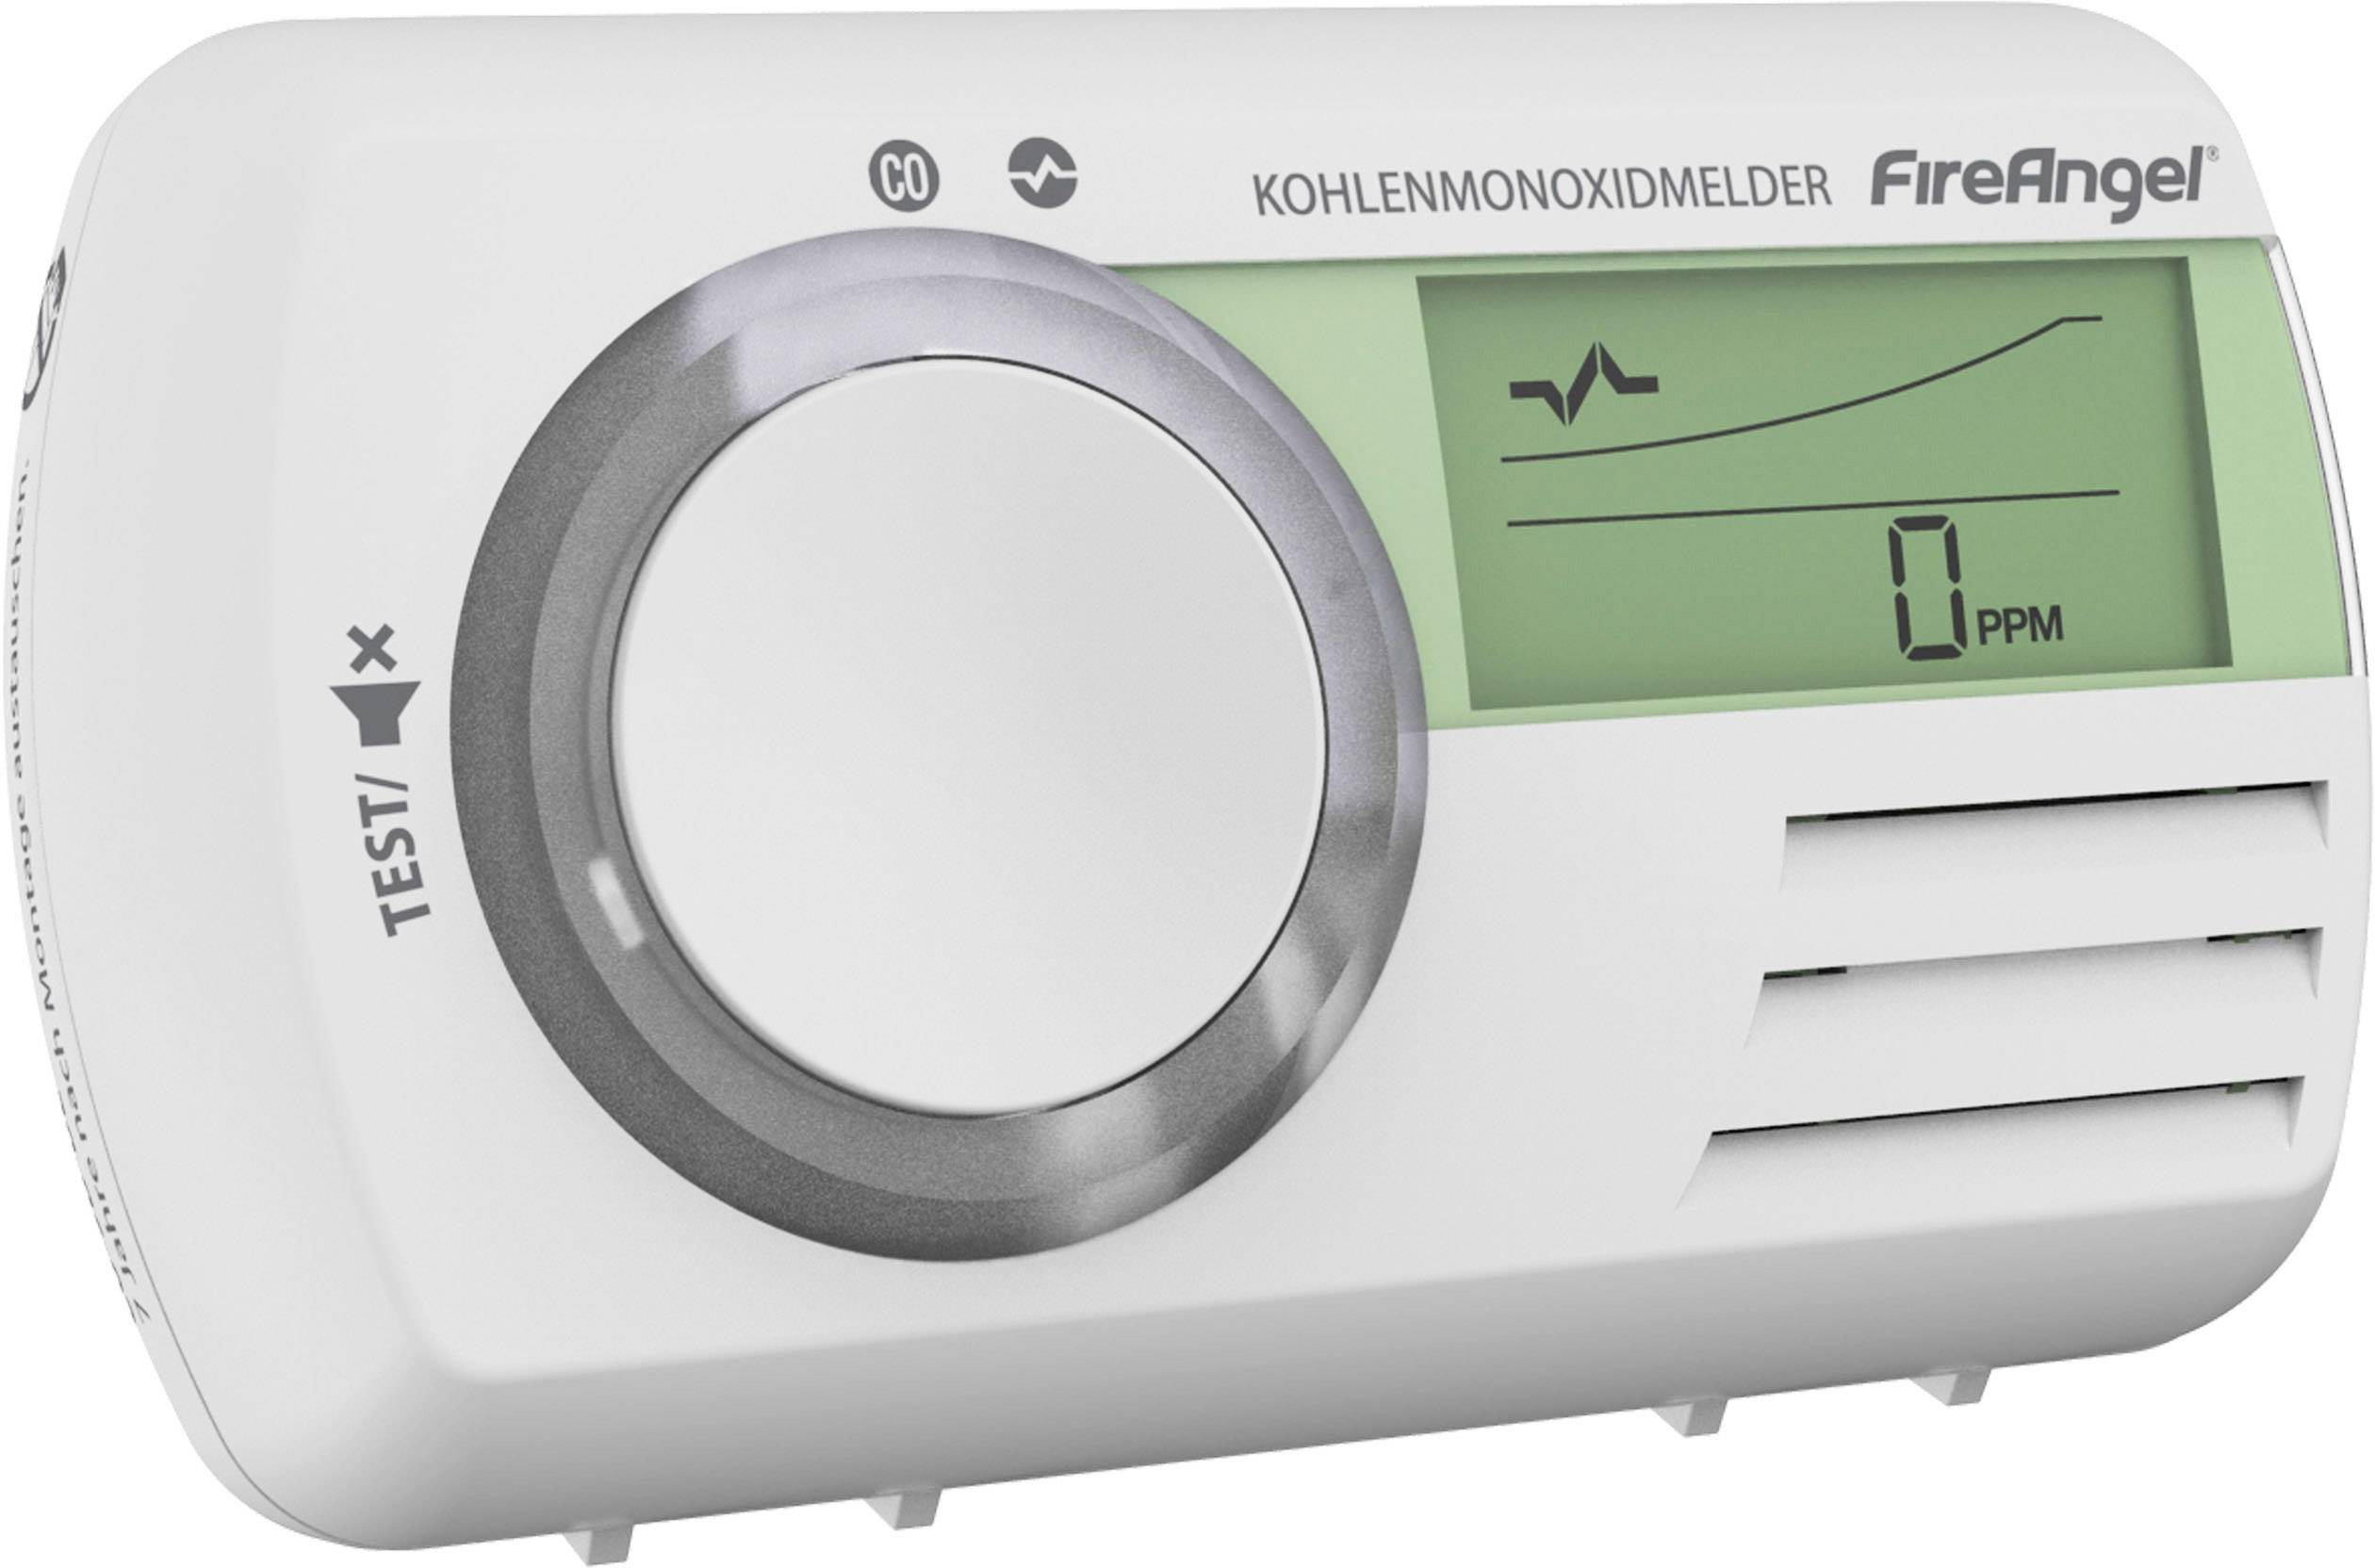 5X Nemaxx CO Melder Alarm Kohlenmonoxid Gasmelder Gaswarner Rauchmelder mit DIN EN 50291